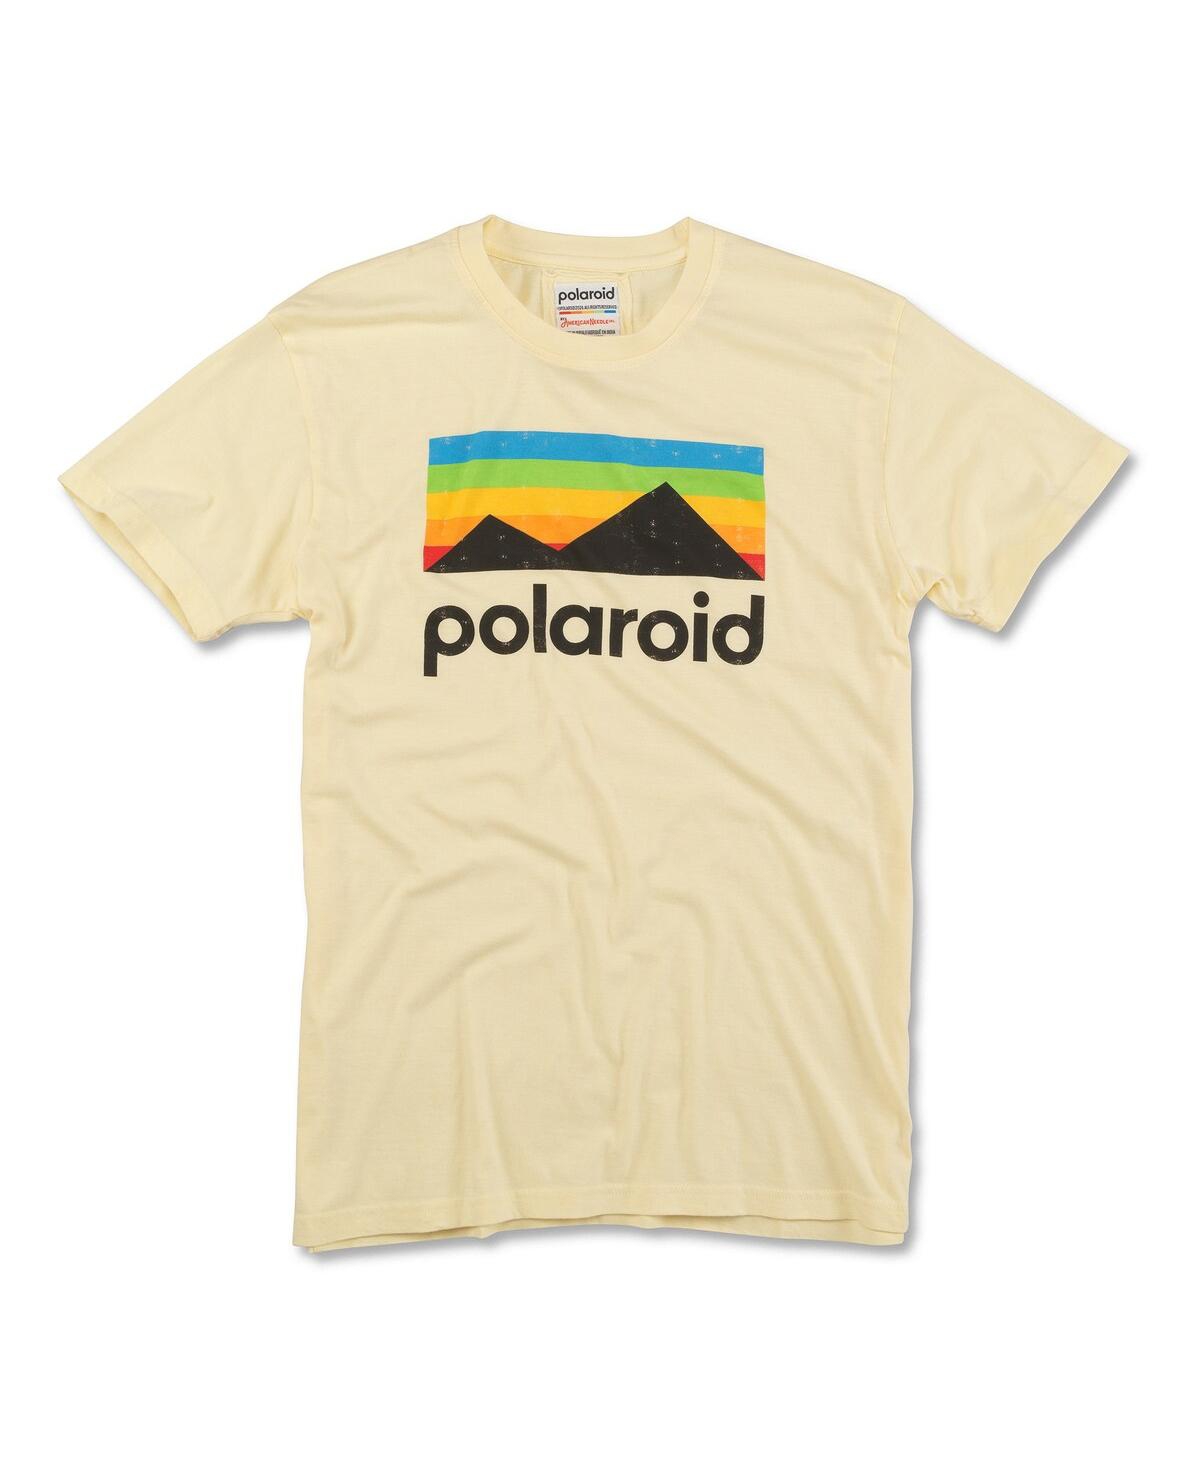 Men's and Women's Yellow Polaroid Brass Tacks T-Shirt - Yellow